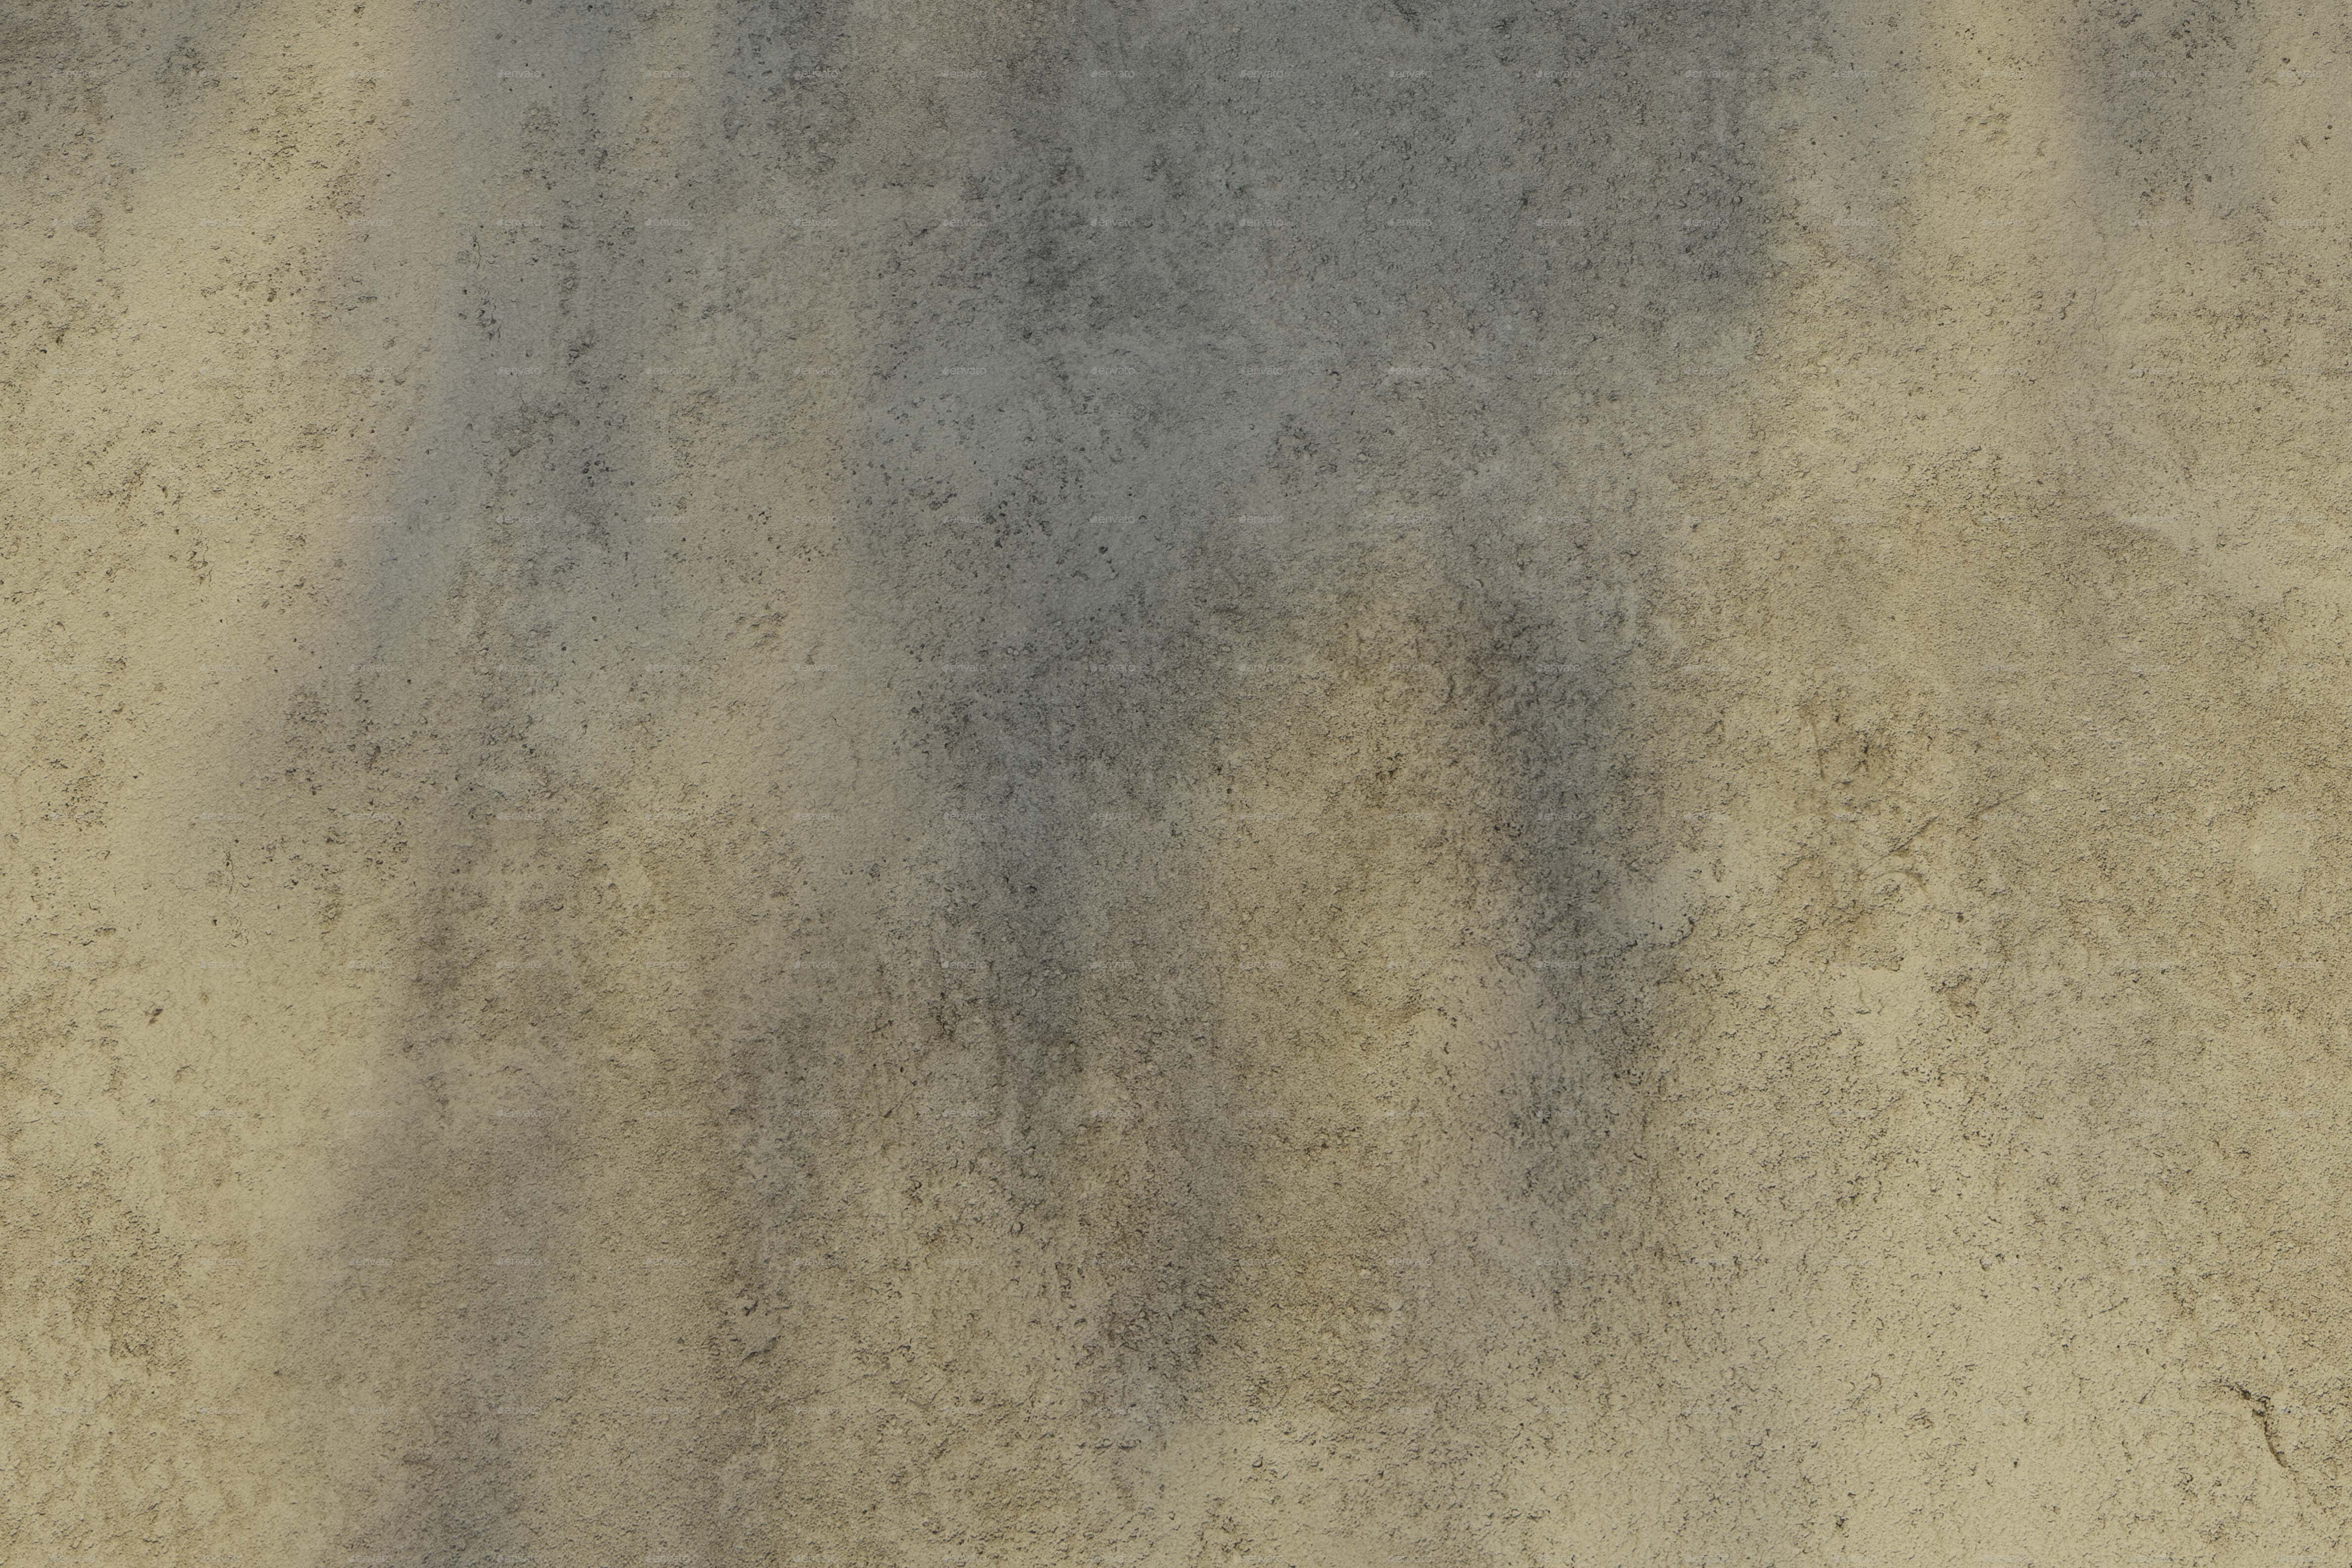 Two Seamless Concrete Textures - 3